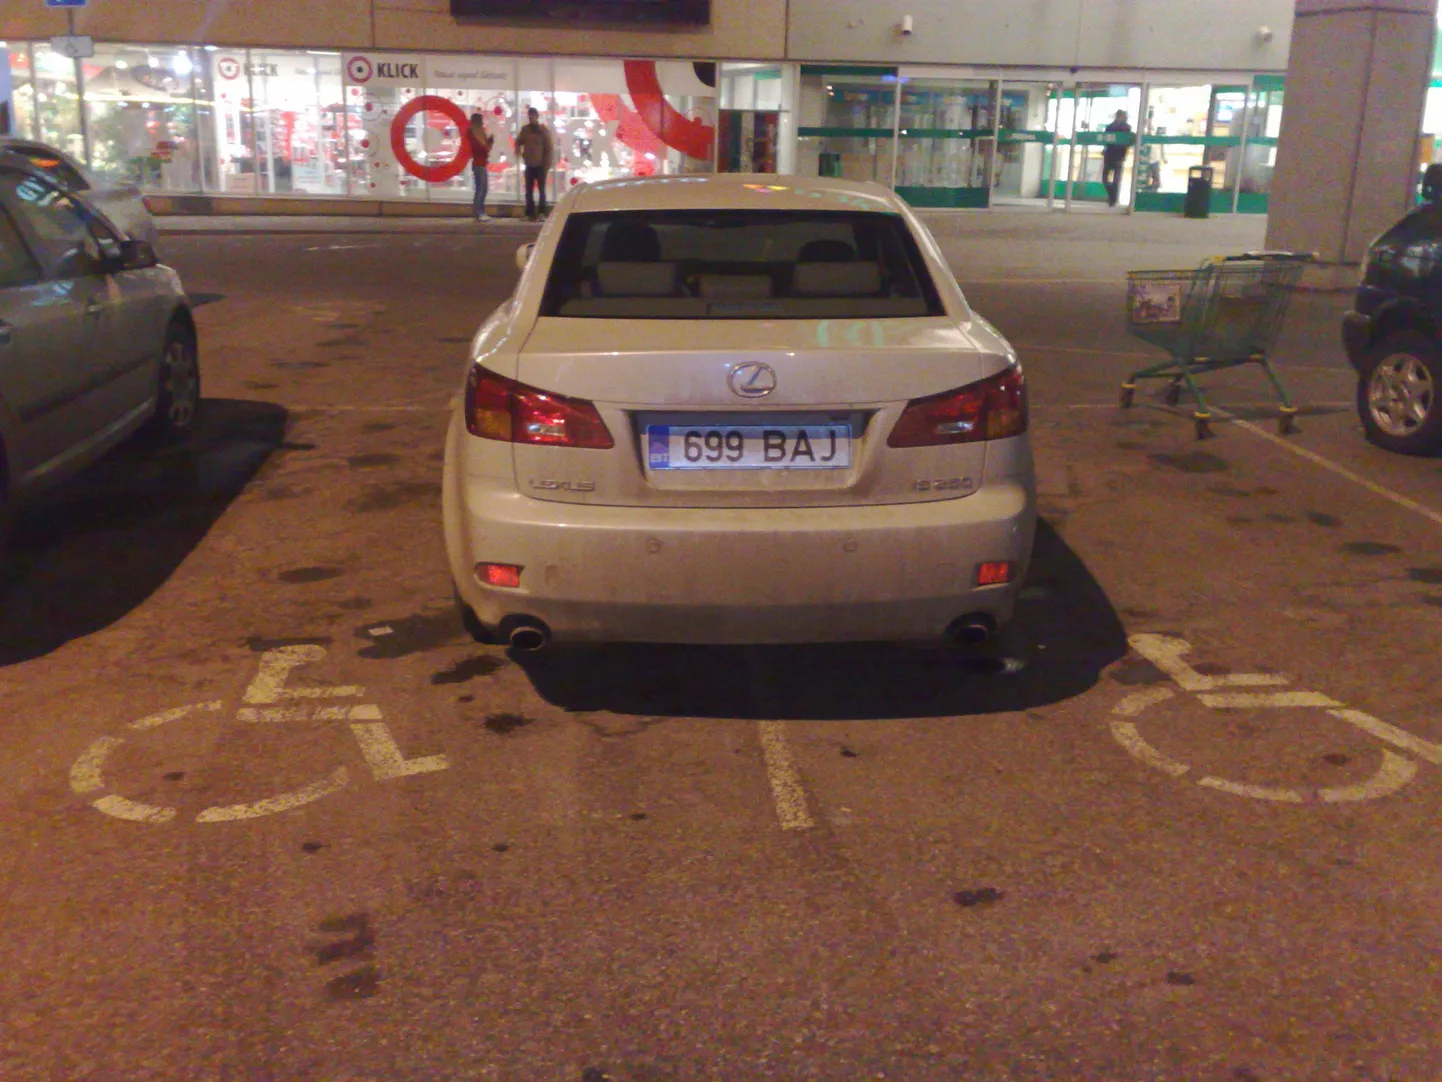 Типичный пример неправильной парковки. Фотографию прислал читатель Рене Оруман, по словам которого, две с виду здоровые девушки на "лексусе" решили оставить машину на месте для инвалидов.